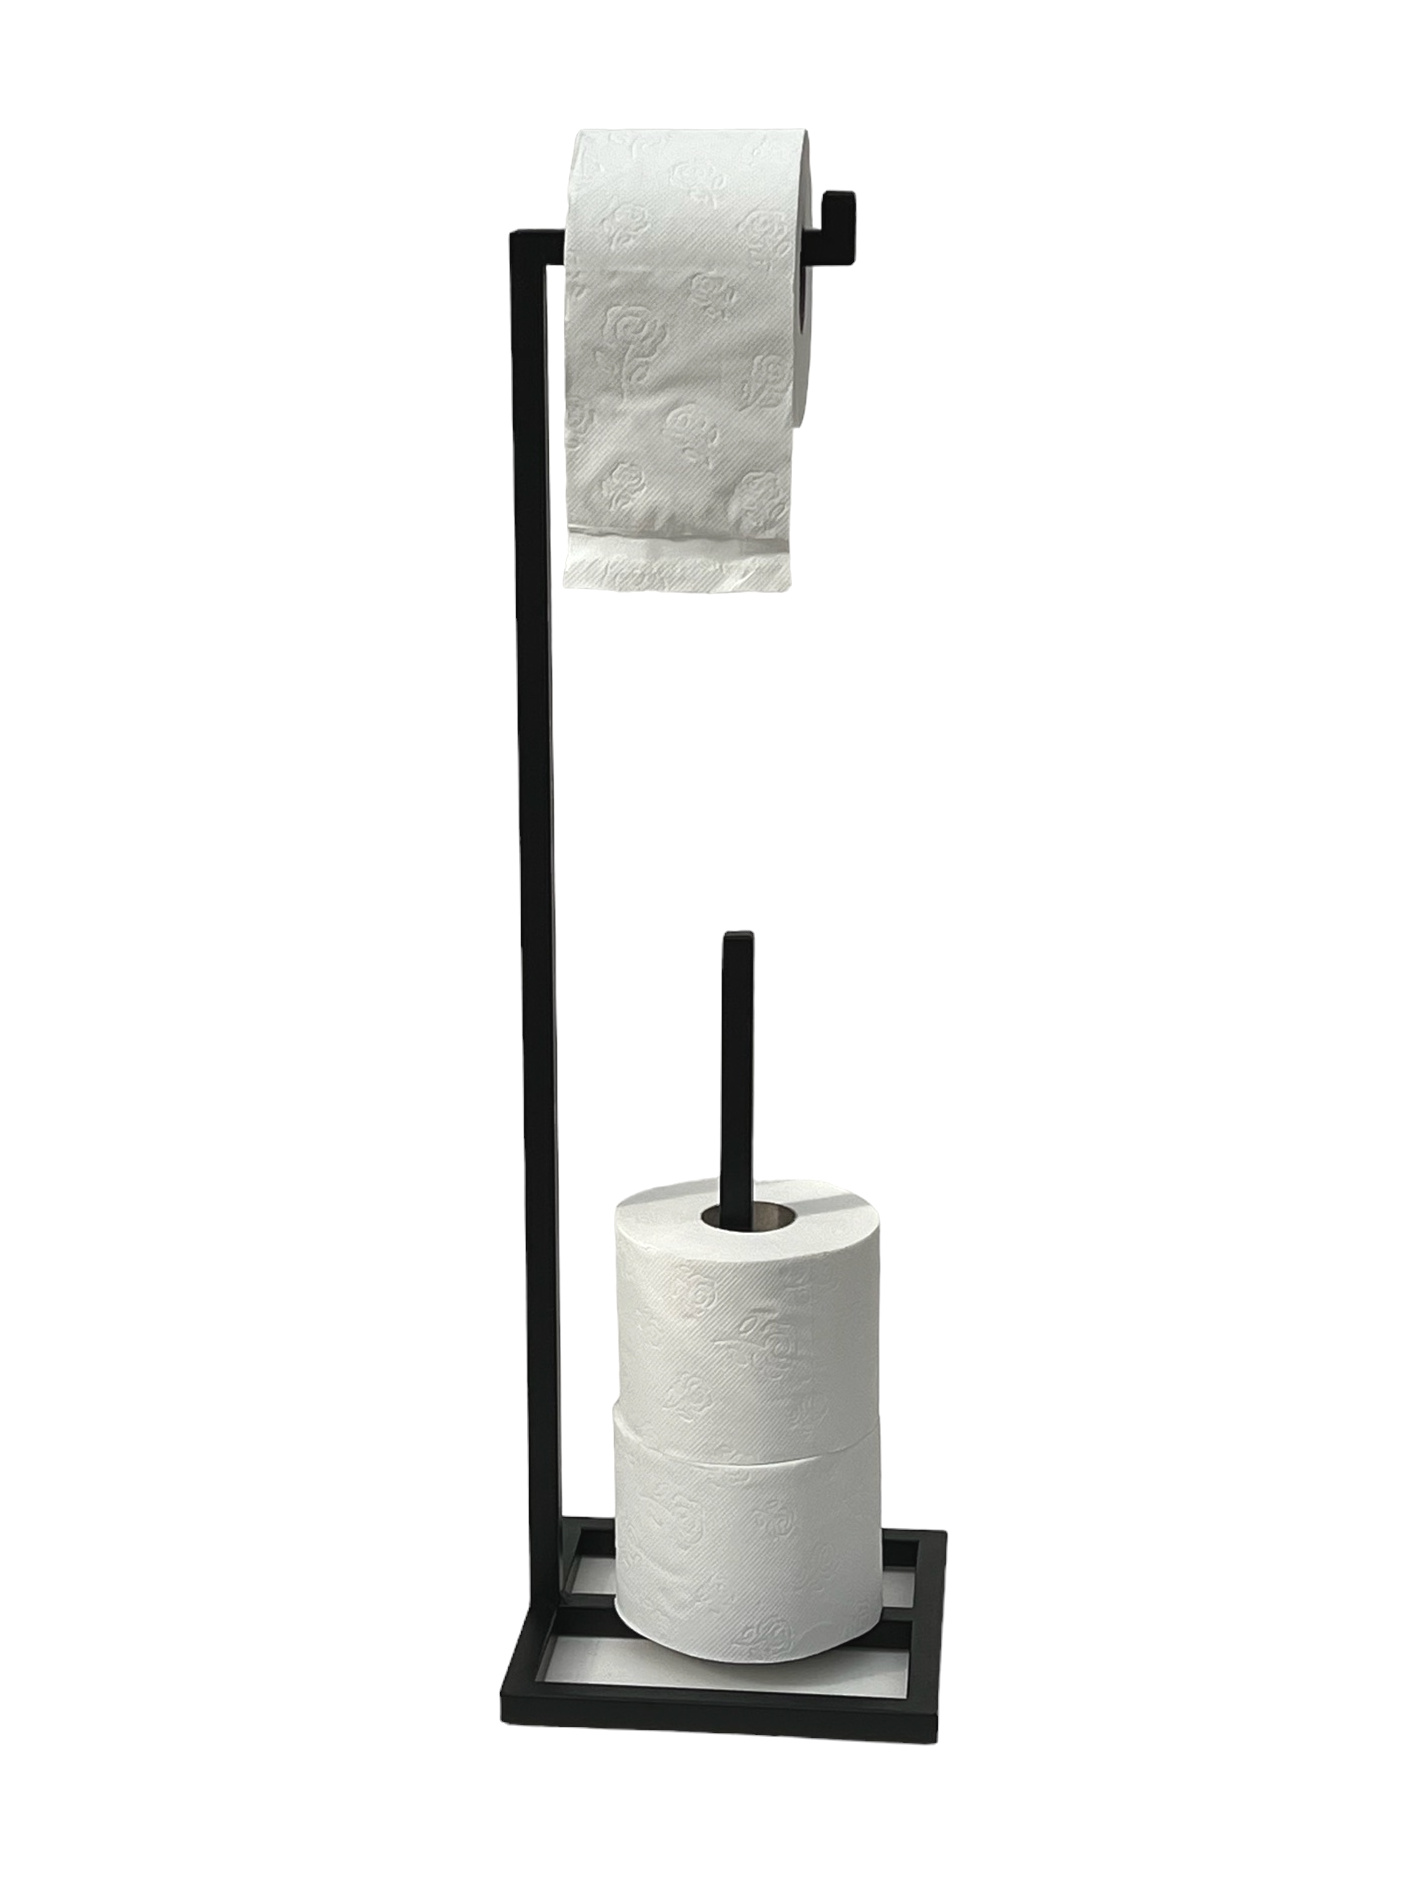 DanDiBo Toilettenpapierhalter Stehend Schwarz Metall Papierhalter Ersatzrollenhalter Rollenhalter-DanDiBo Ständer Klopapierhalter Gäste WC 96459